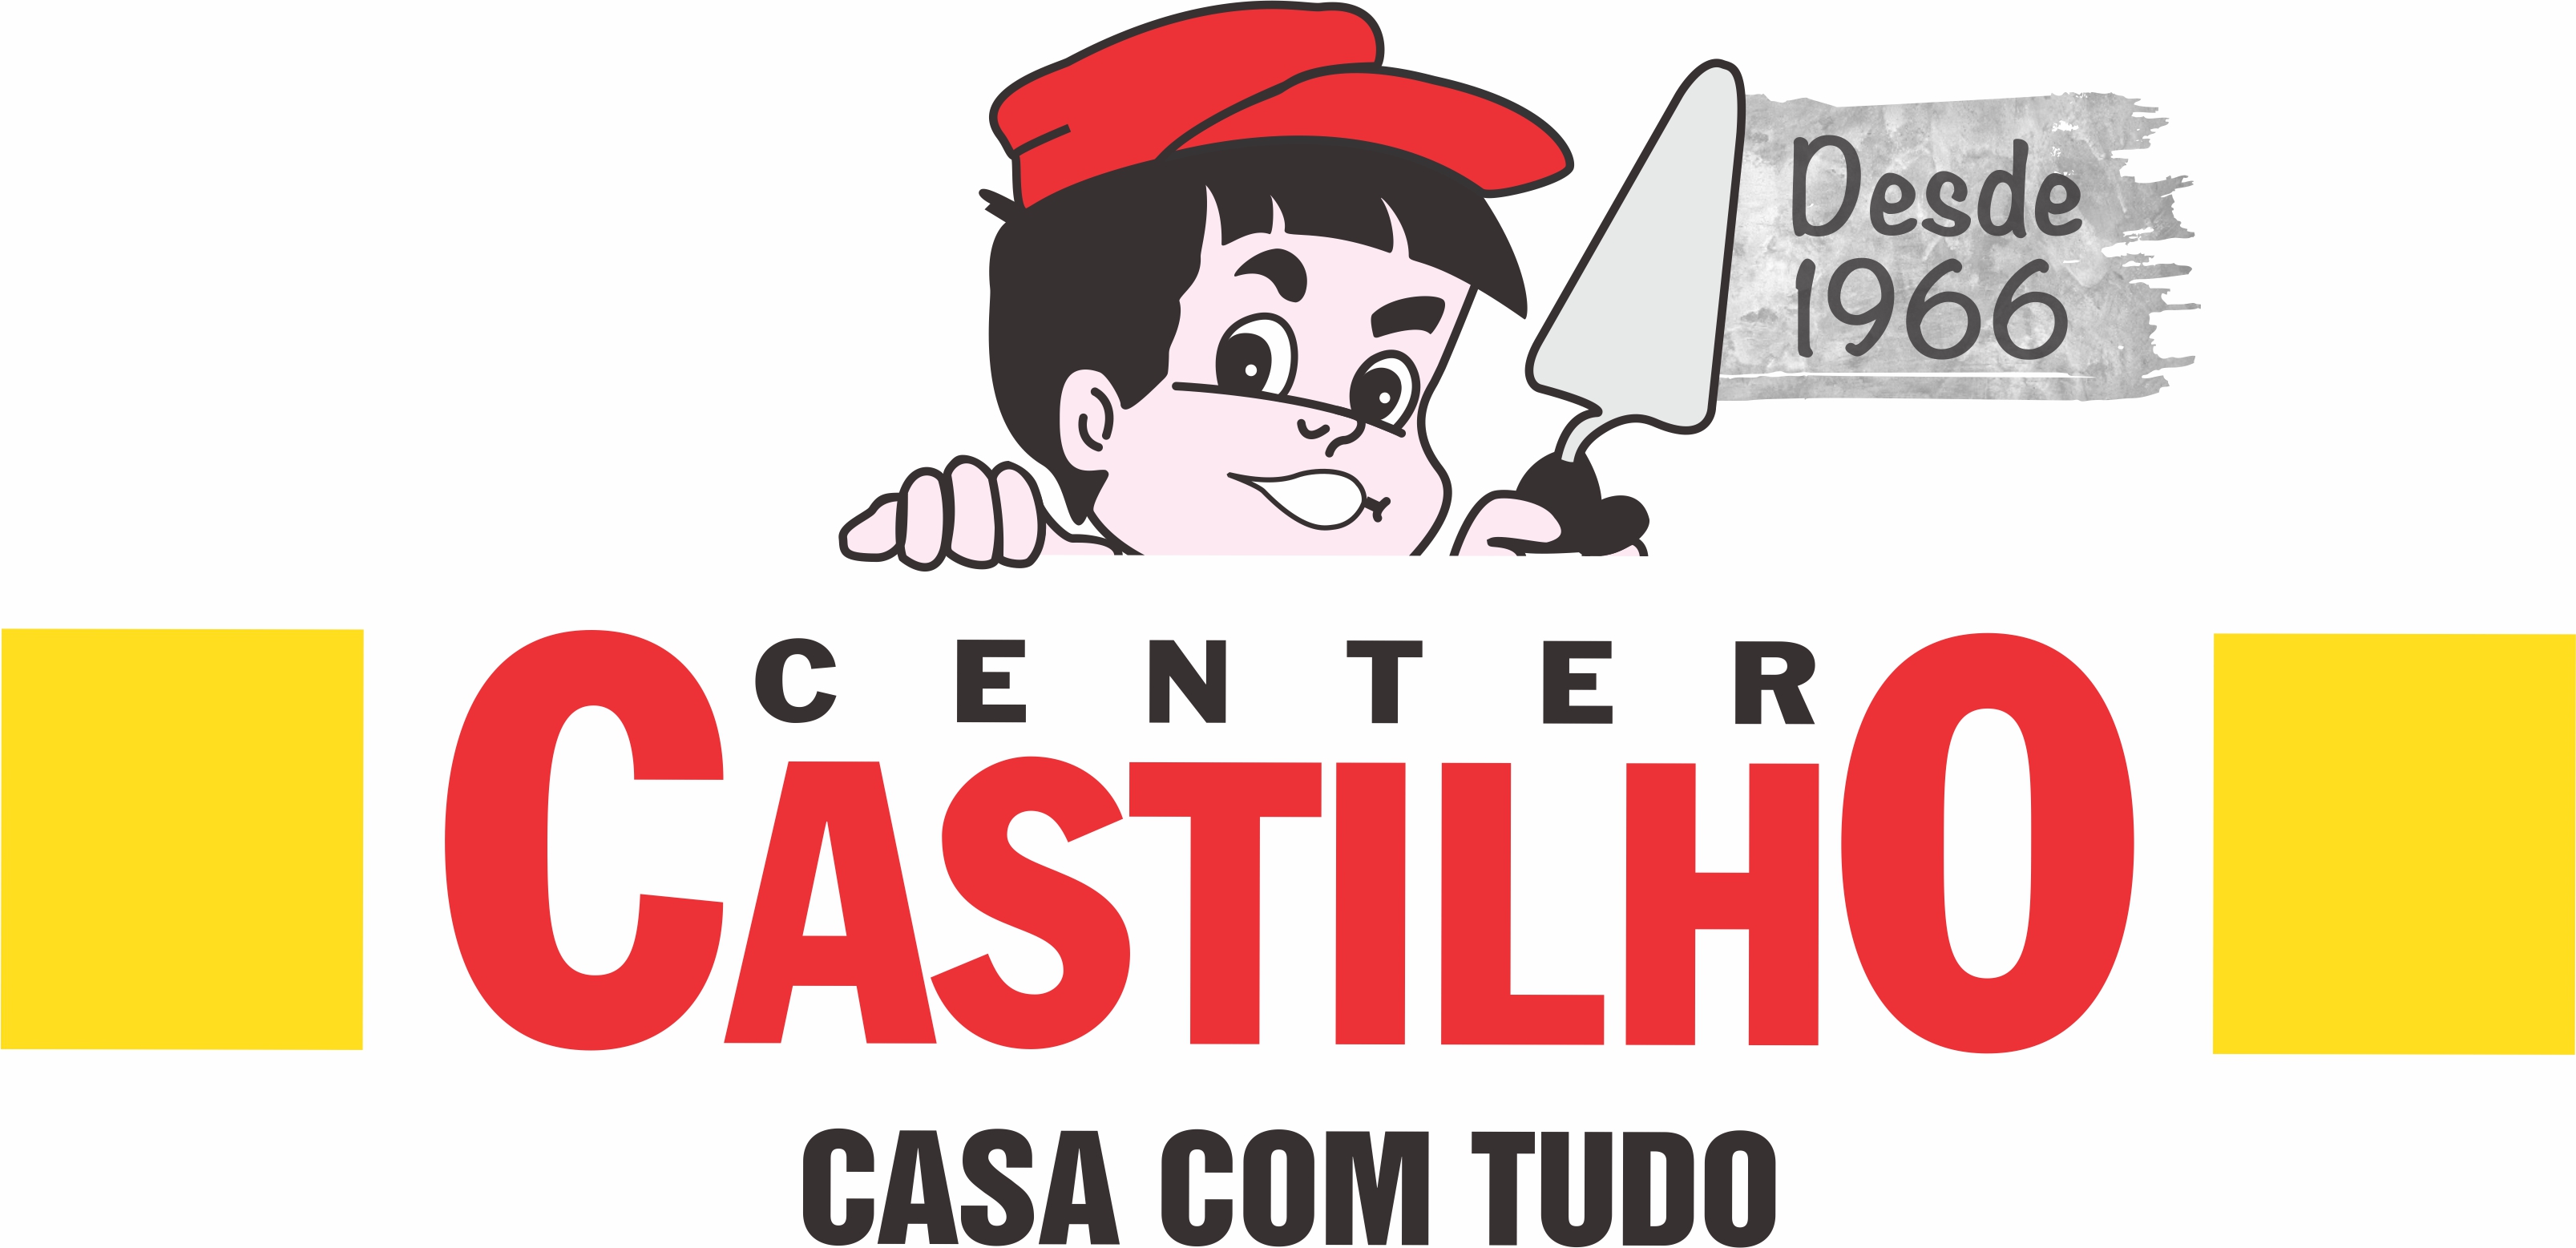 CENTER CASTILHO - Materiais de Construção - São Bernardo do Campo, SP